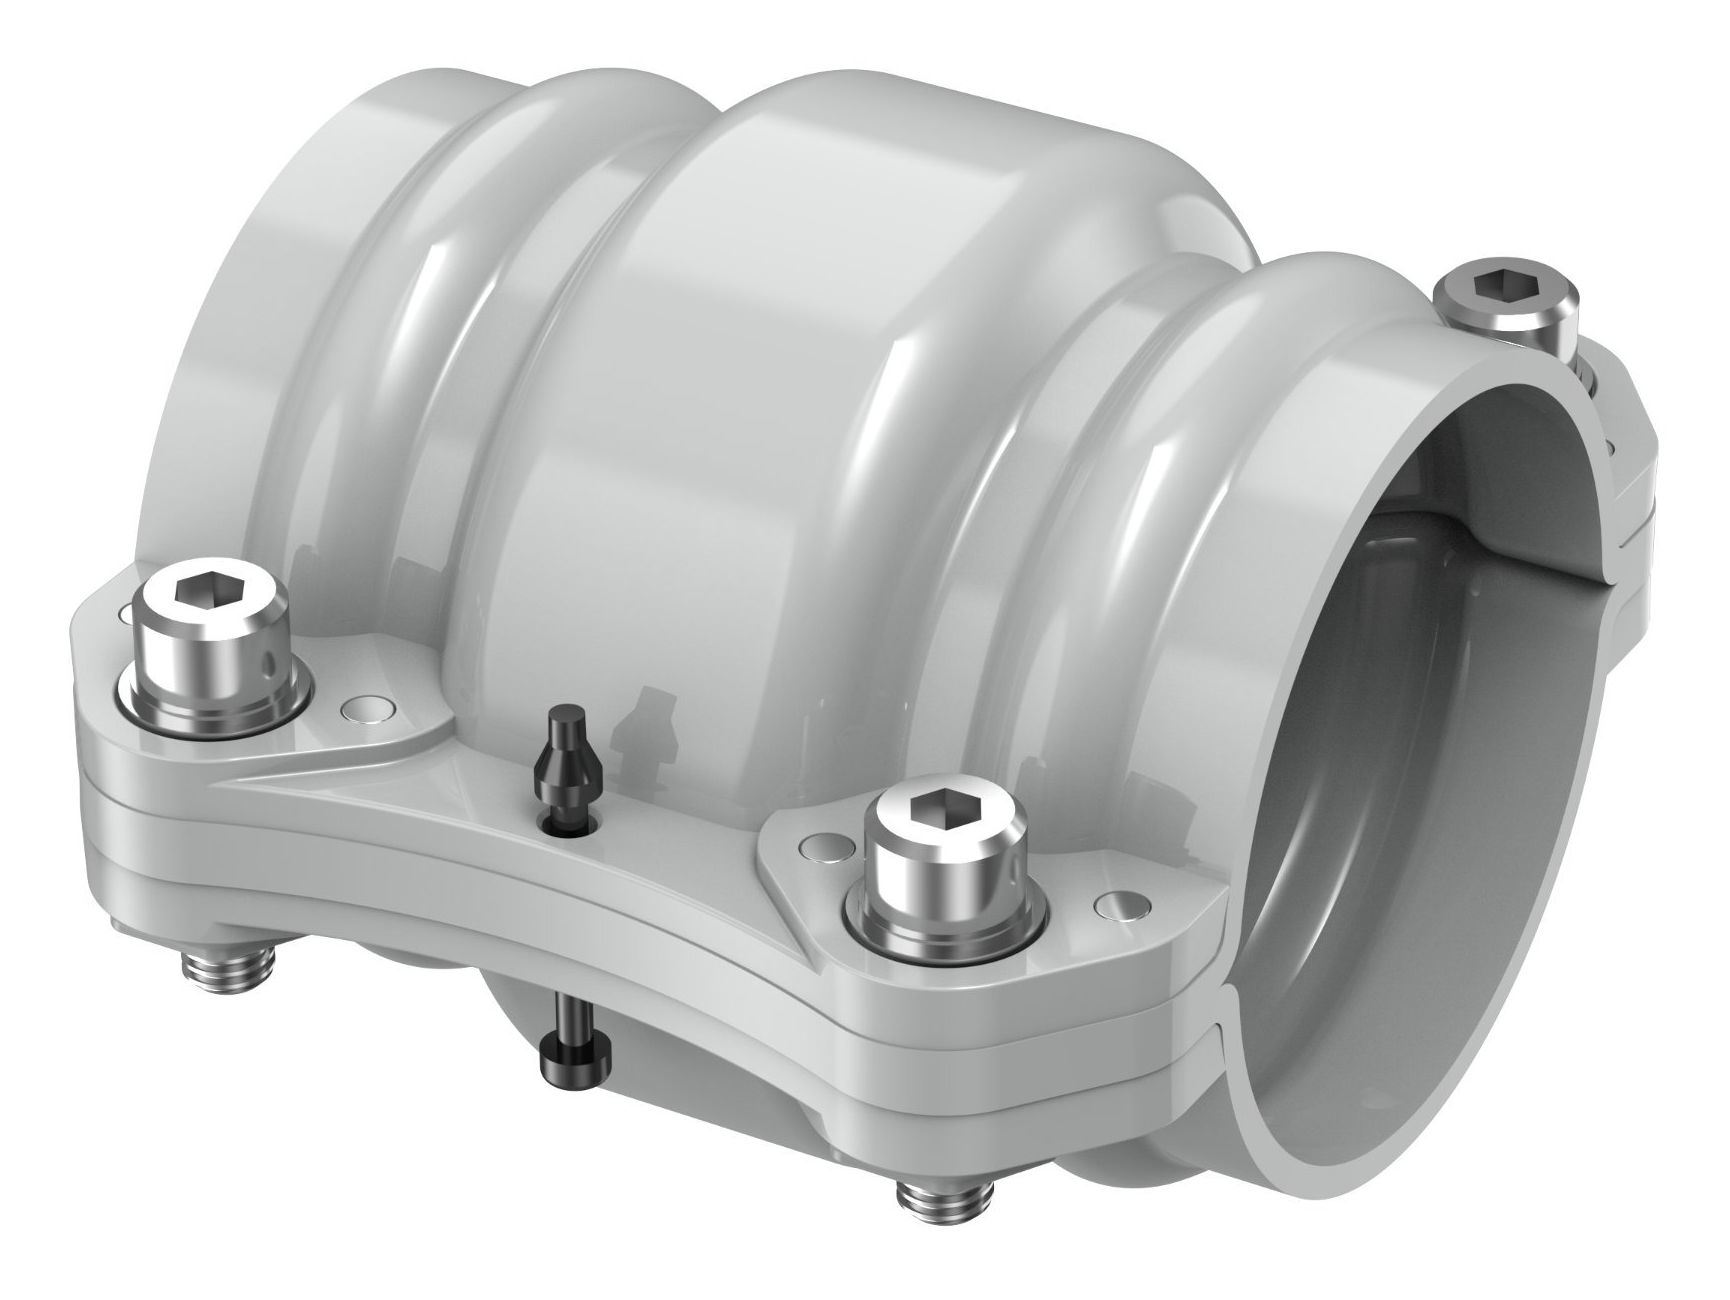 Accesorios de tubería de aire comprimido de aluminio: conector de tubo a tubo igual